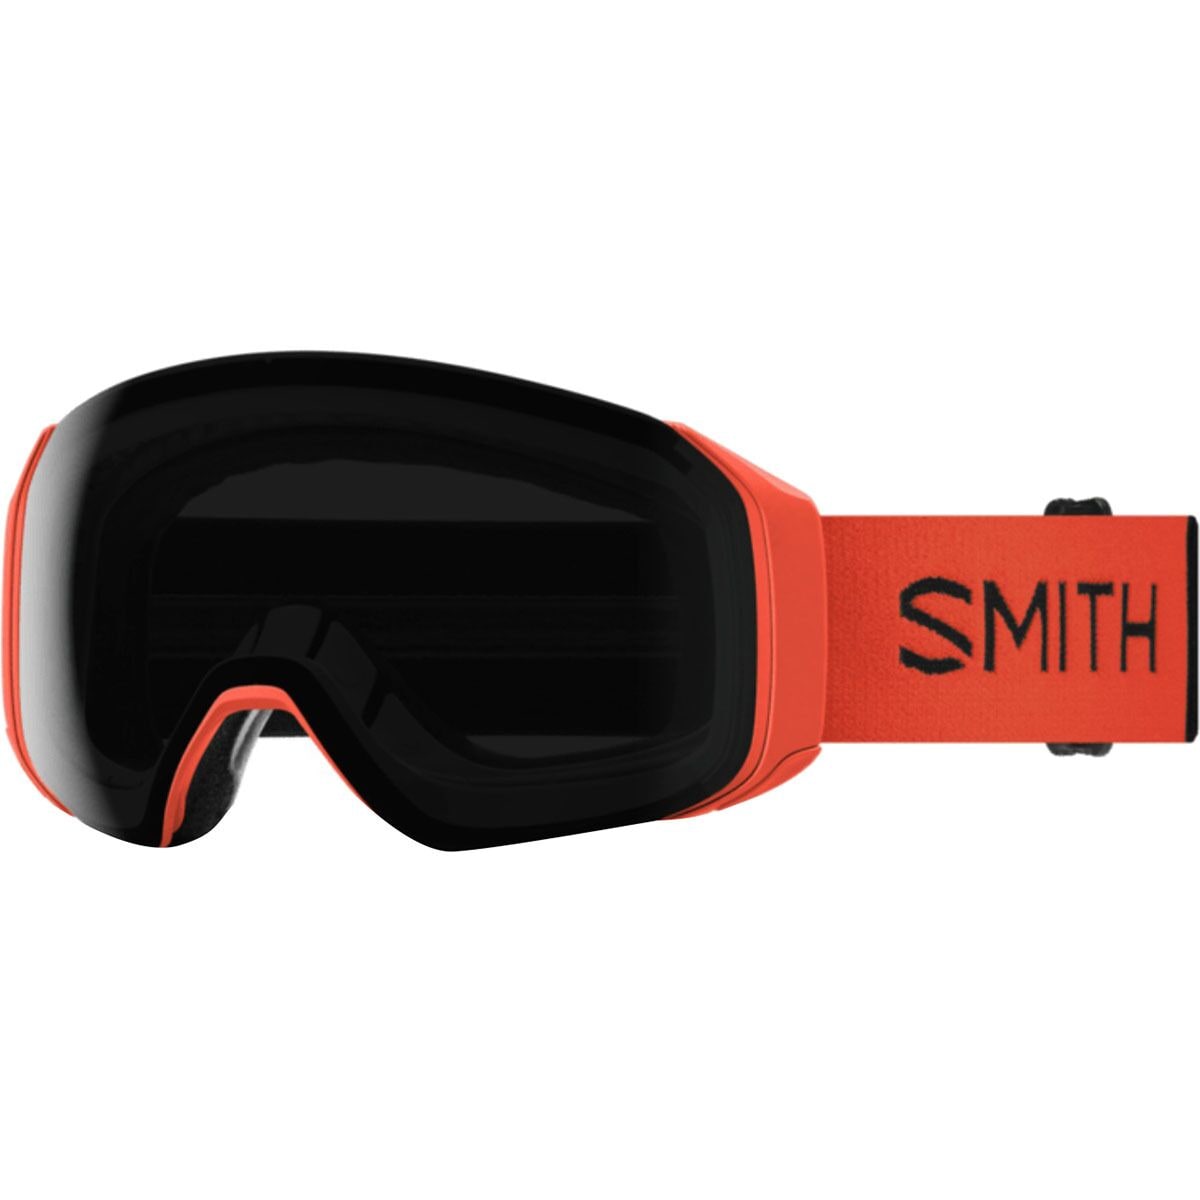 Photos - Ski Goggles Smith 4D MAG S Goggles 